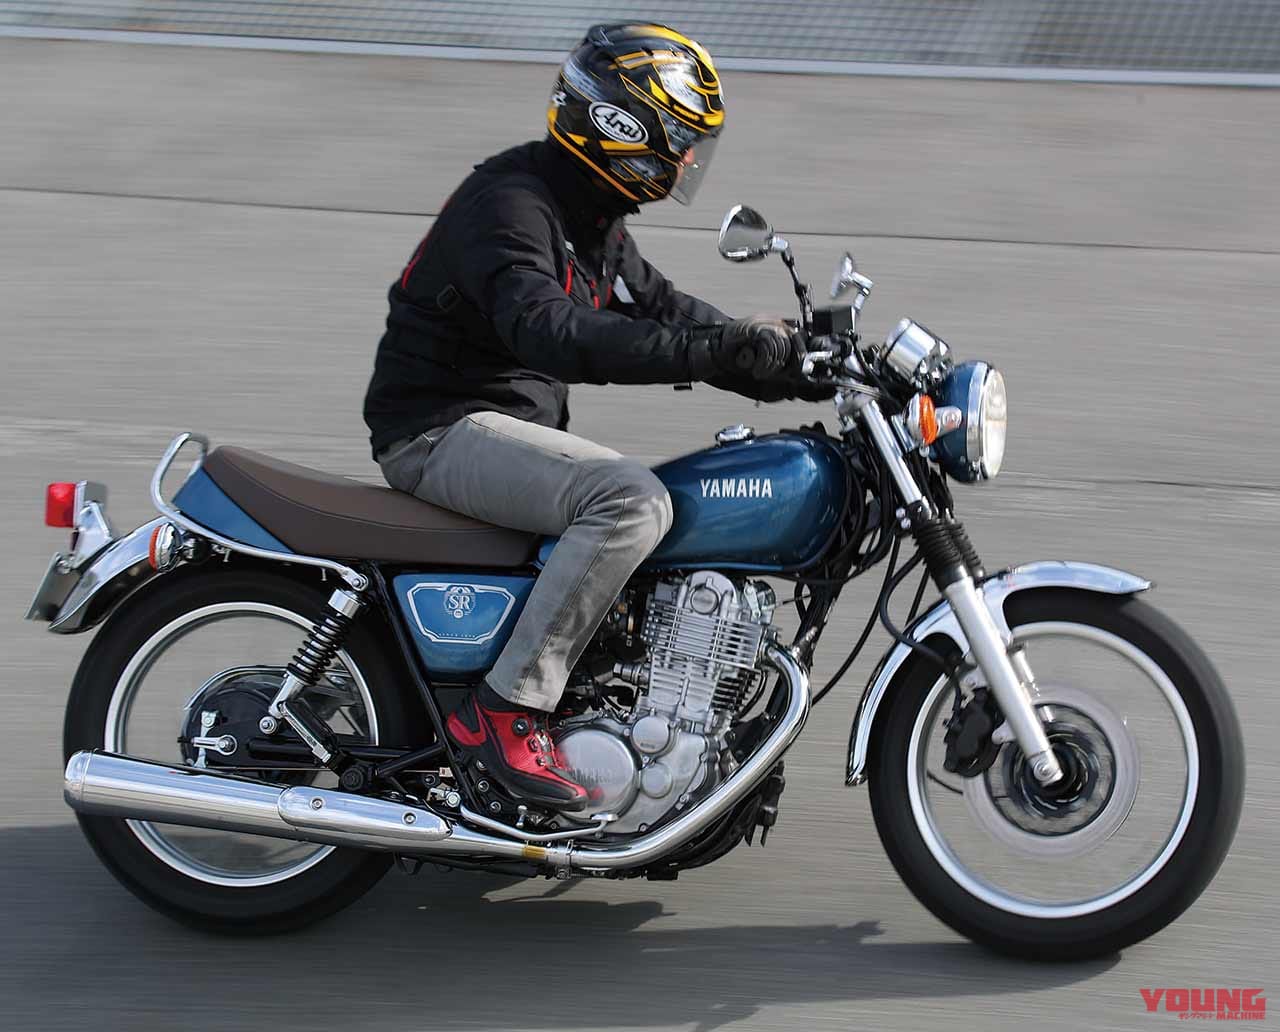 19ストリートスポーツ400cc人気バイクランキング マシン オブ ザ イヤー投票 Webヤングマシン 最新バイク情報